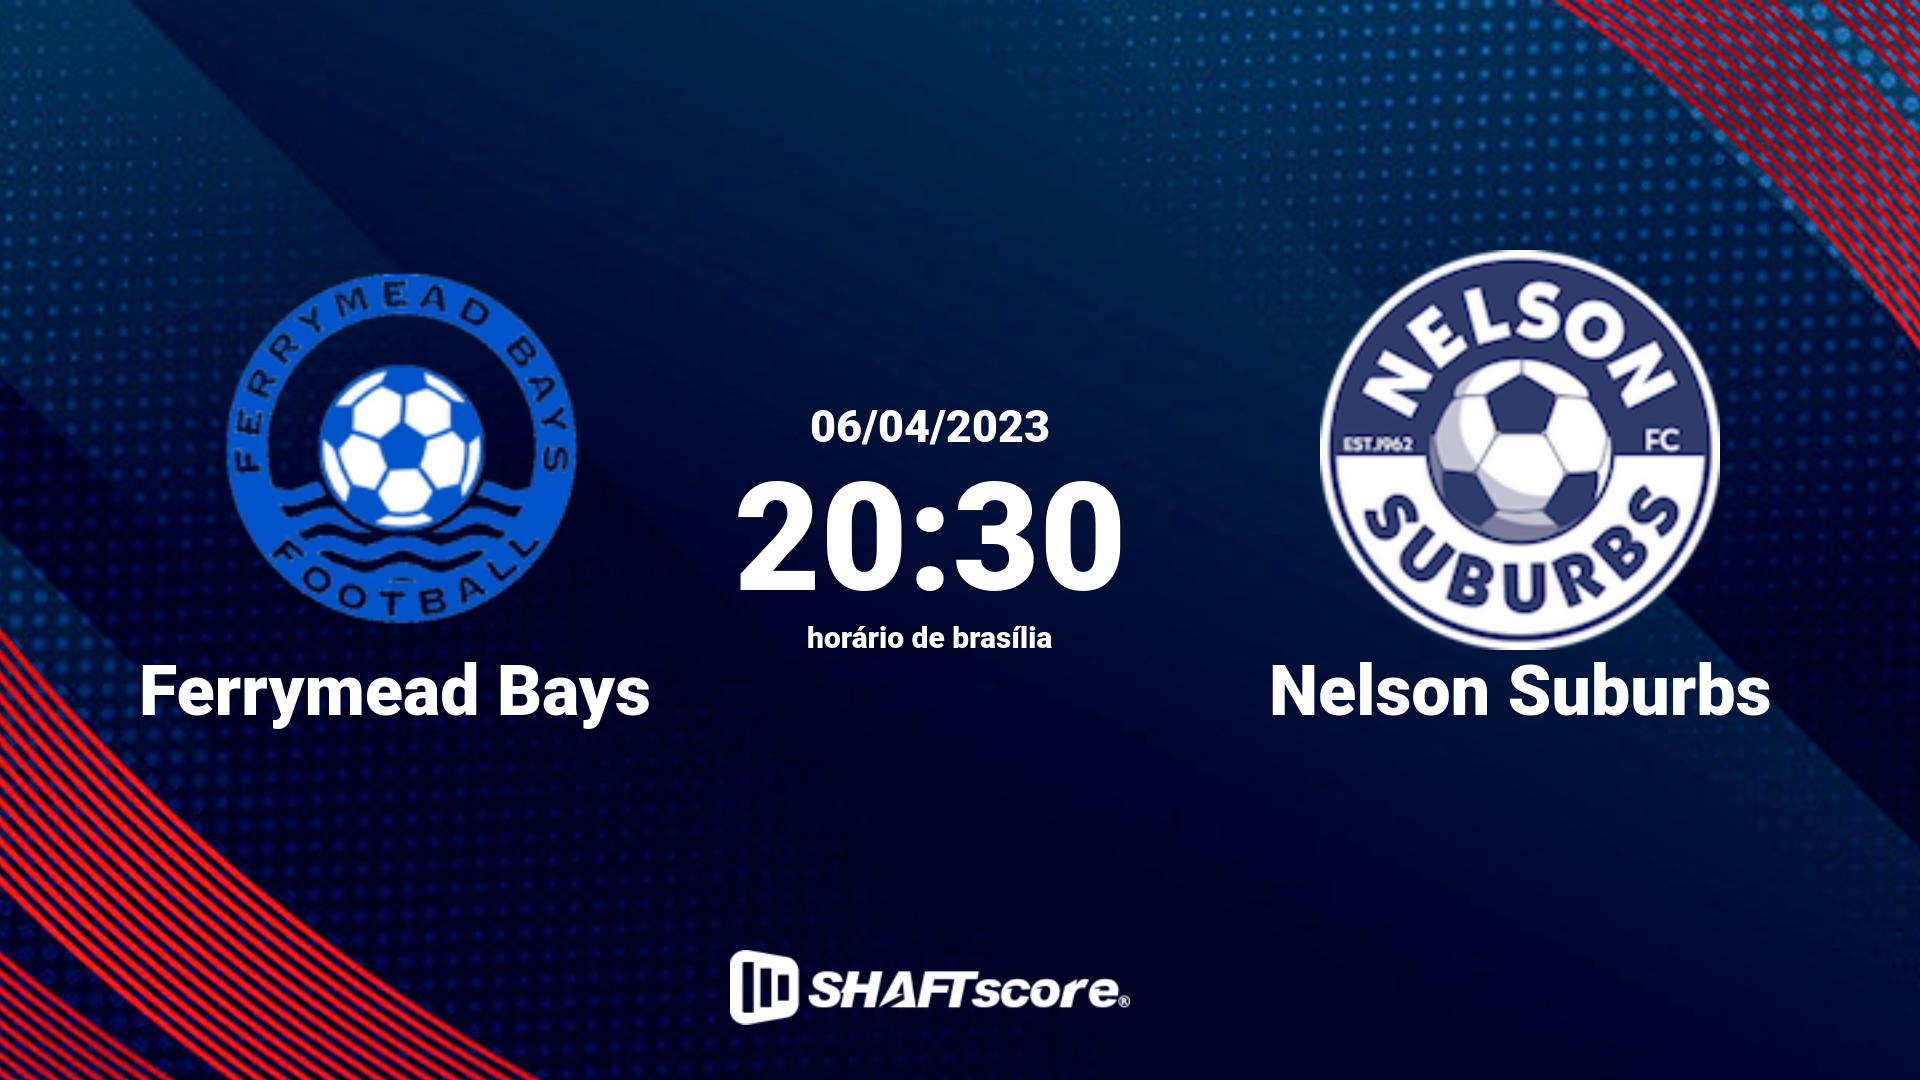 Estatísticas do jogo Ferrymead Bays vs Nelson Suburbs 06.04 20:30